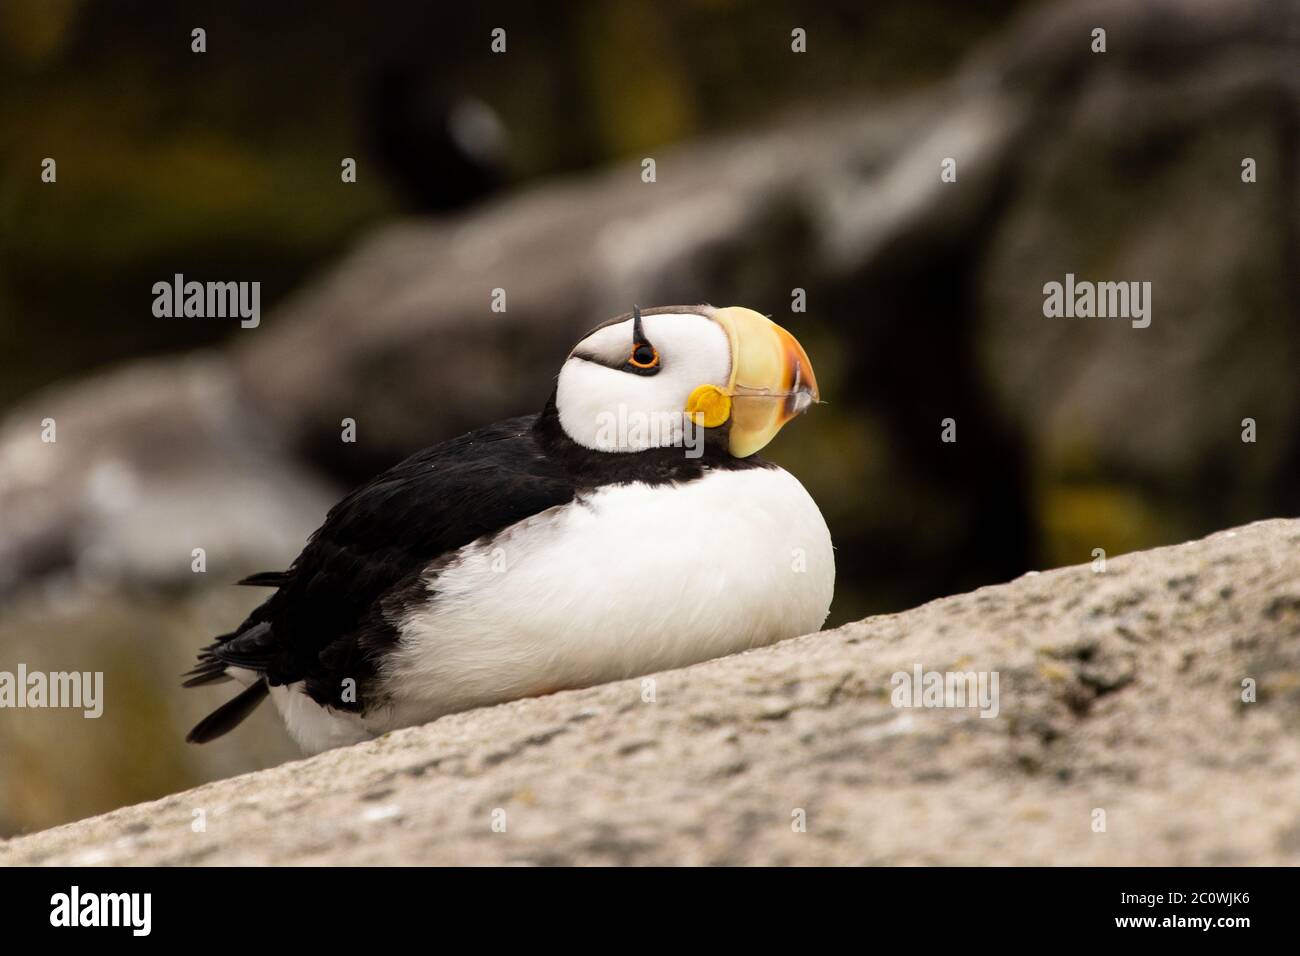 Nahaufnahme von einer gehörnten Puffin Seevögelin, die auf einem Felsen sitzt Stockfoto